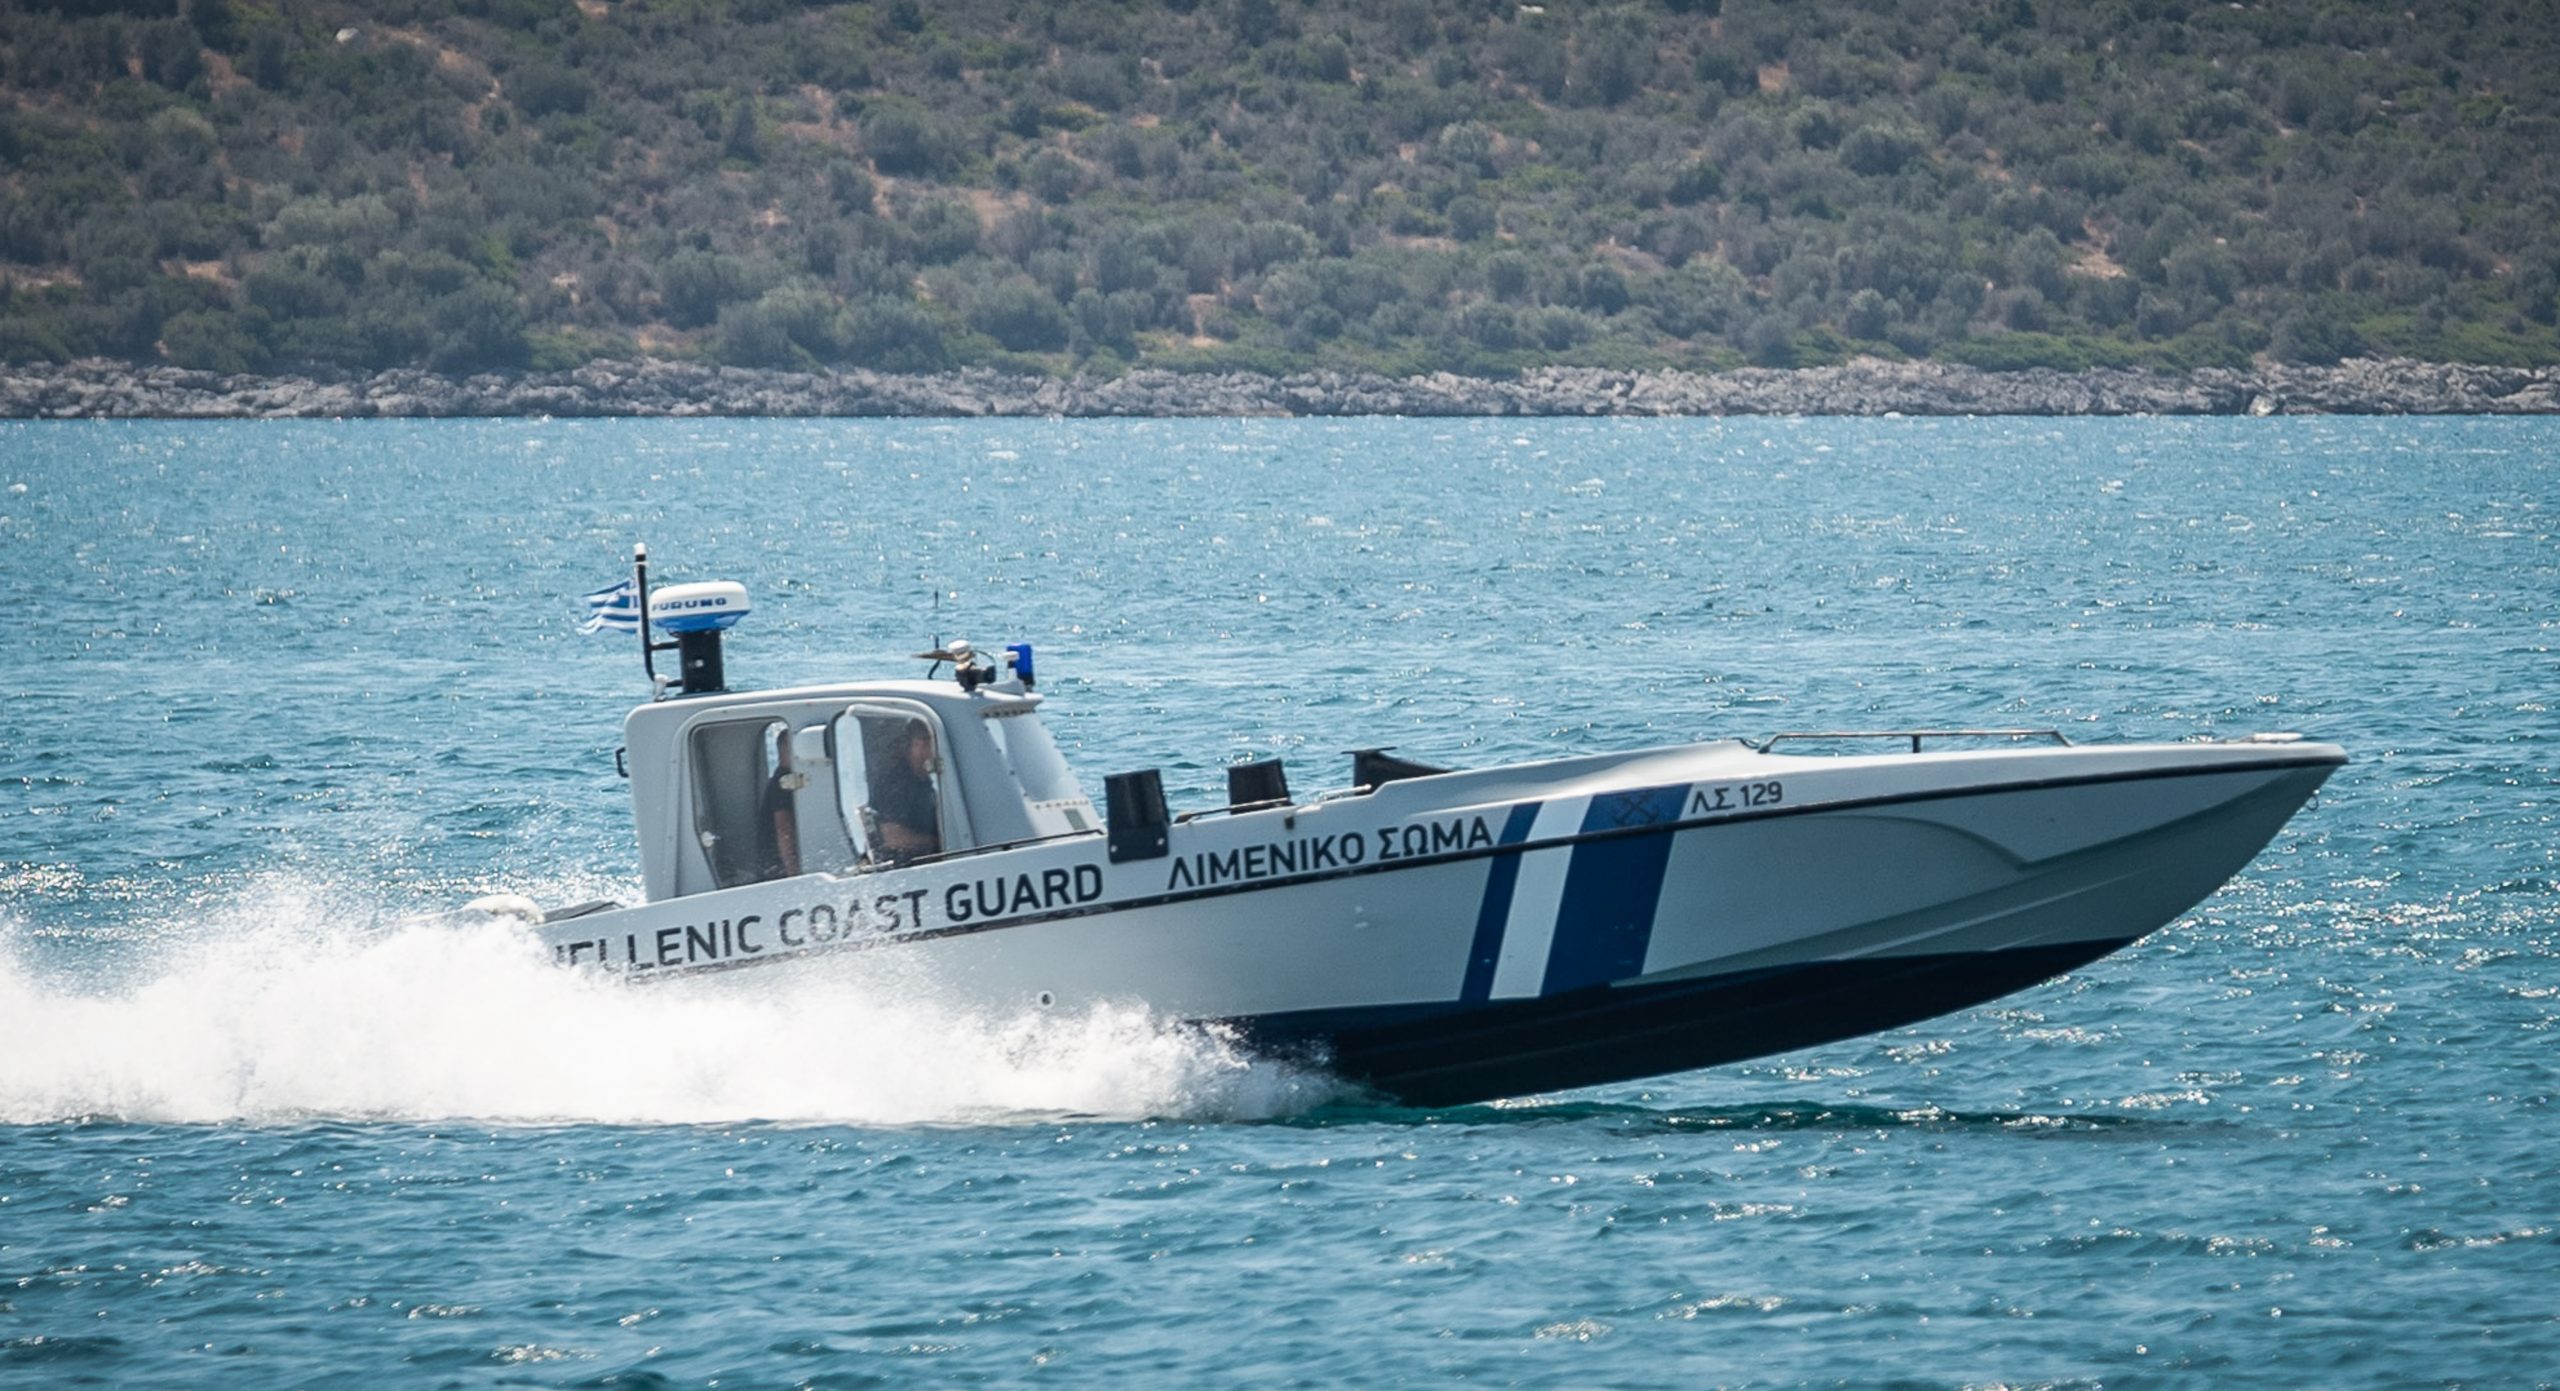 Εύβοια: Συνελήφθησαν δύο άτομα για το ναυάγιο με τους 22 νεκρούς μετανάστες στο Στενό Καφηρέα